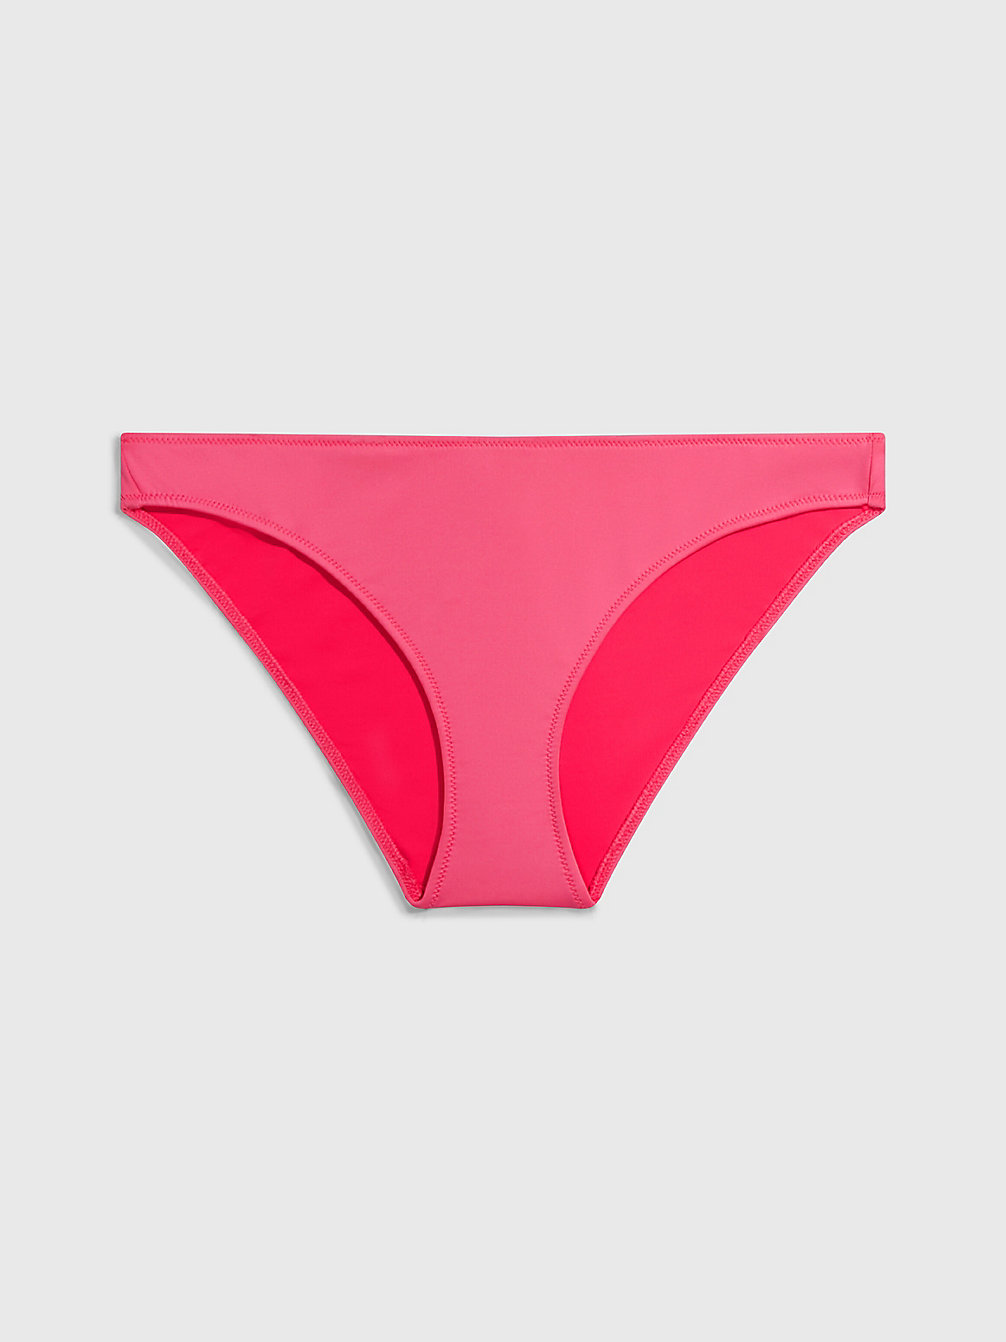 PINK FLASH Bikini Bottoms - CK Monogram undefined women Calvin Klein